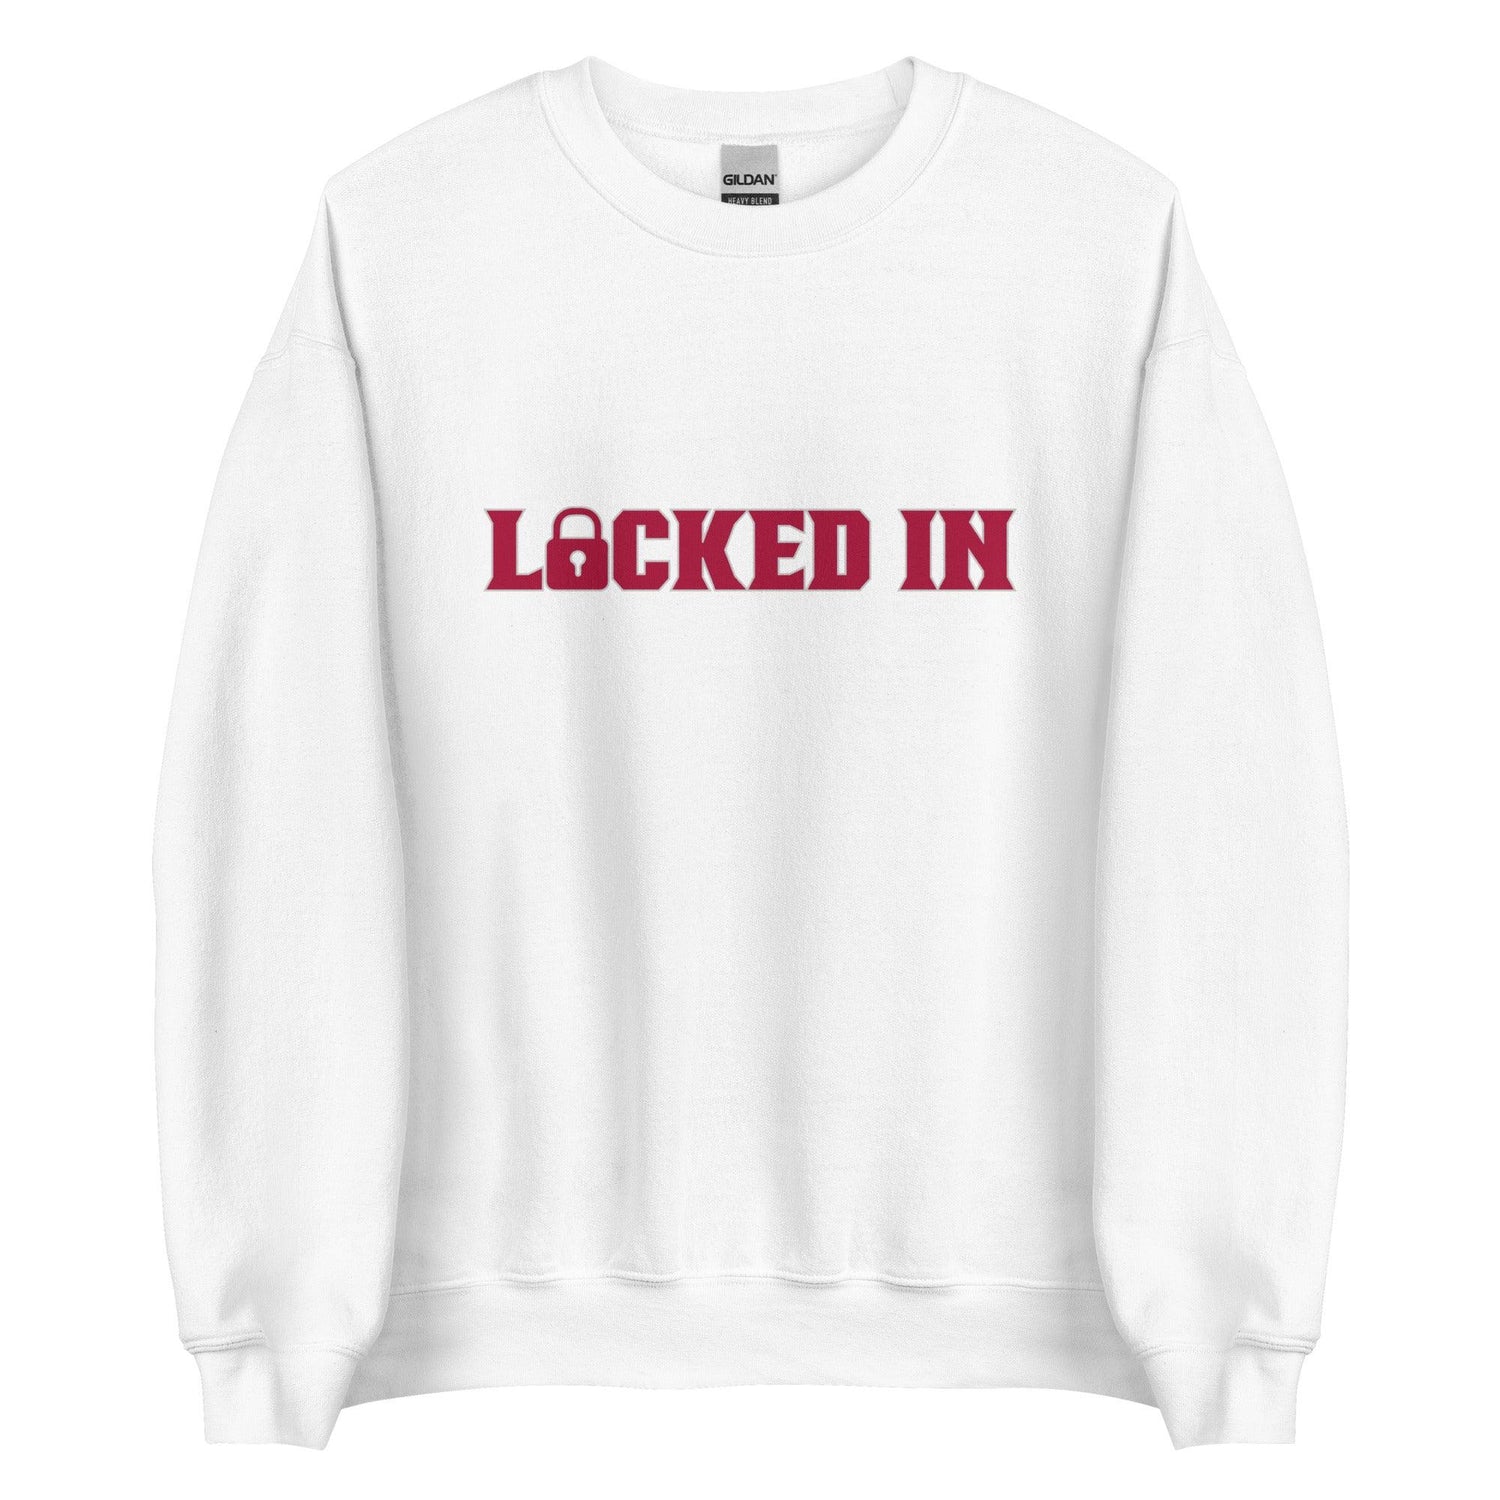 Monkell Goodwine "Locked In" Sweatshirt - Fan Arch